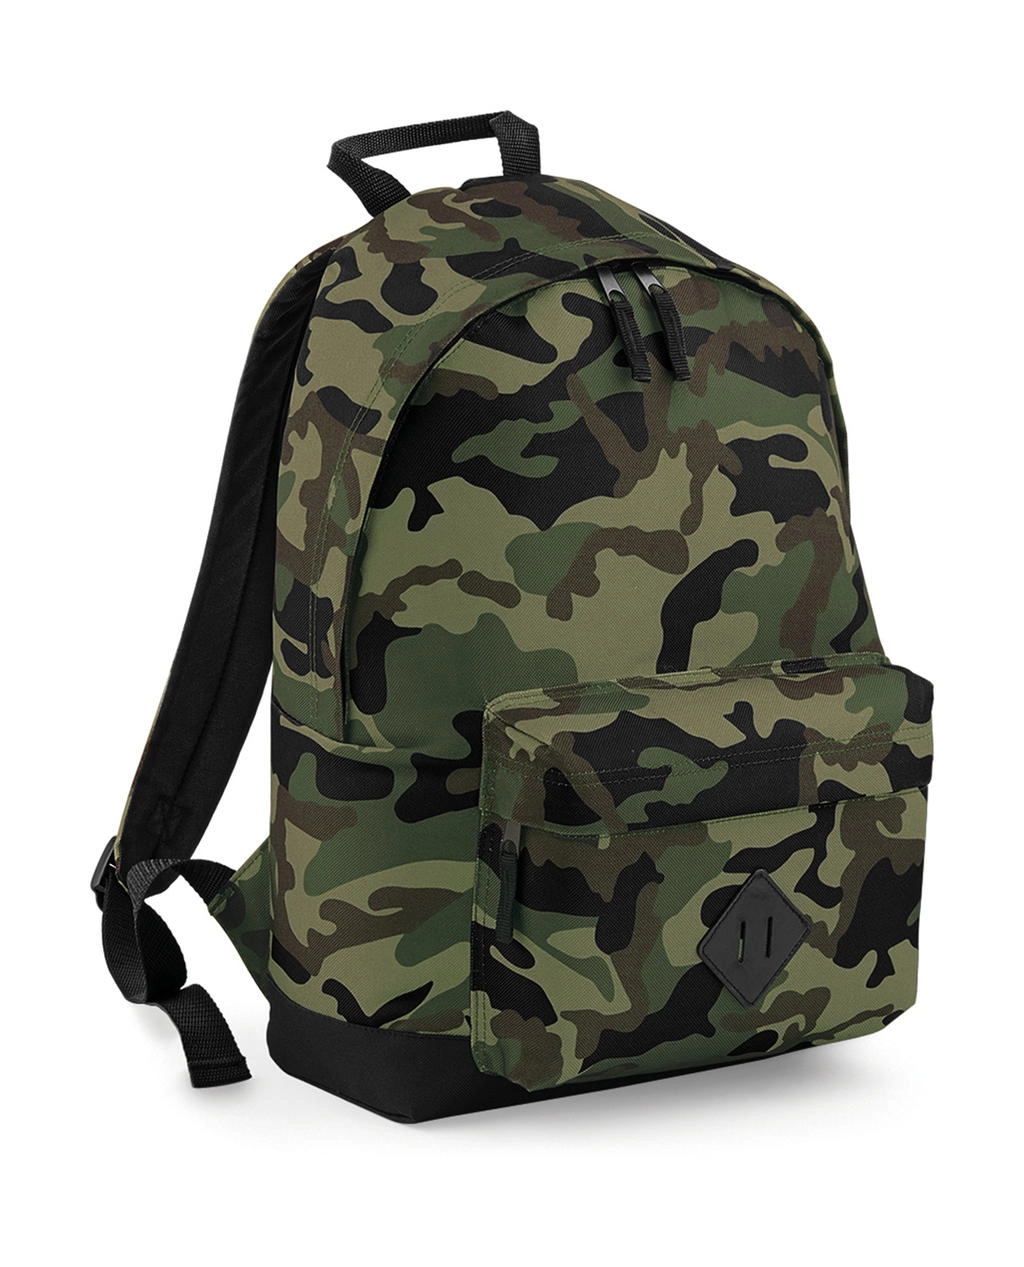 Camo Backpack zum Besticken und Bedrucken in der Farbe Jungle Camo mit Ihren Logo, Schriftzug oder Motiv.